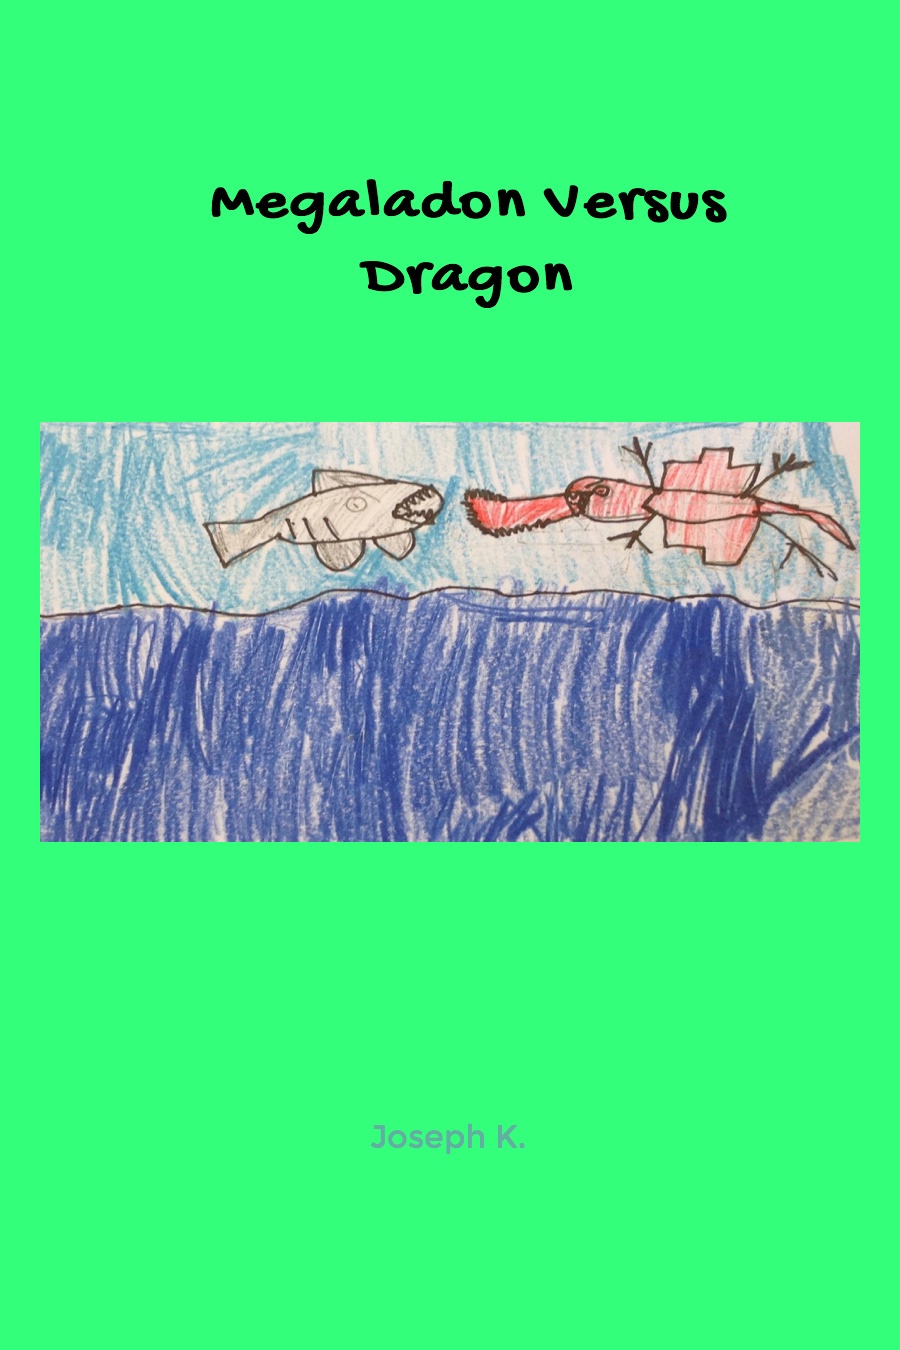 Megaladon vs. Dragon by Joseph K